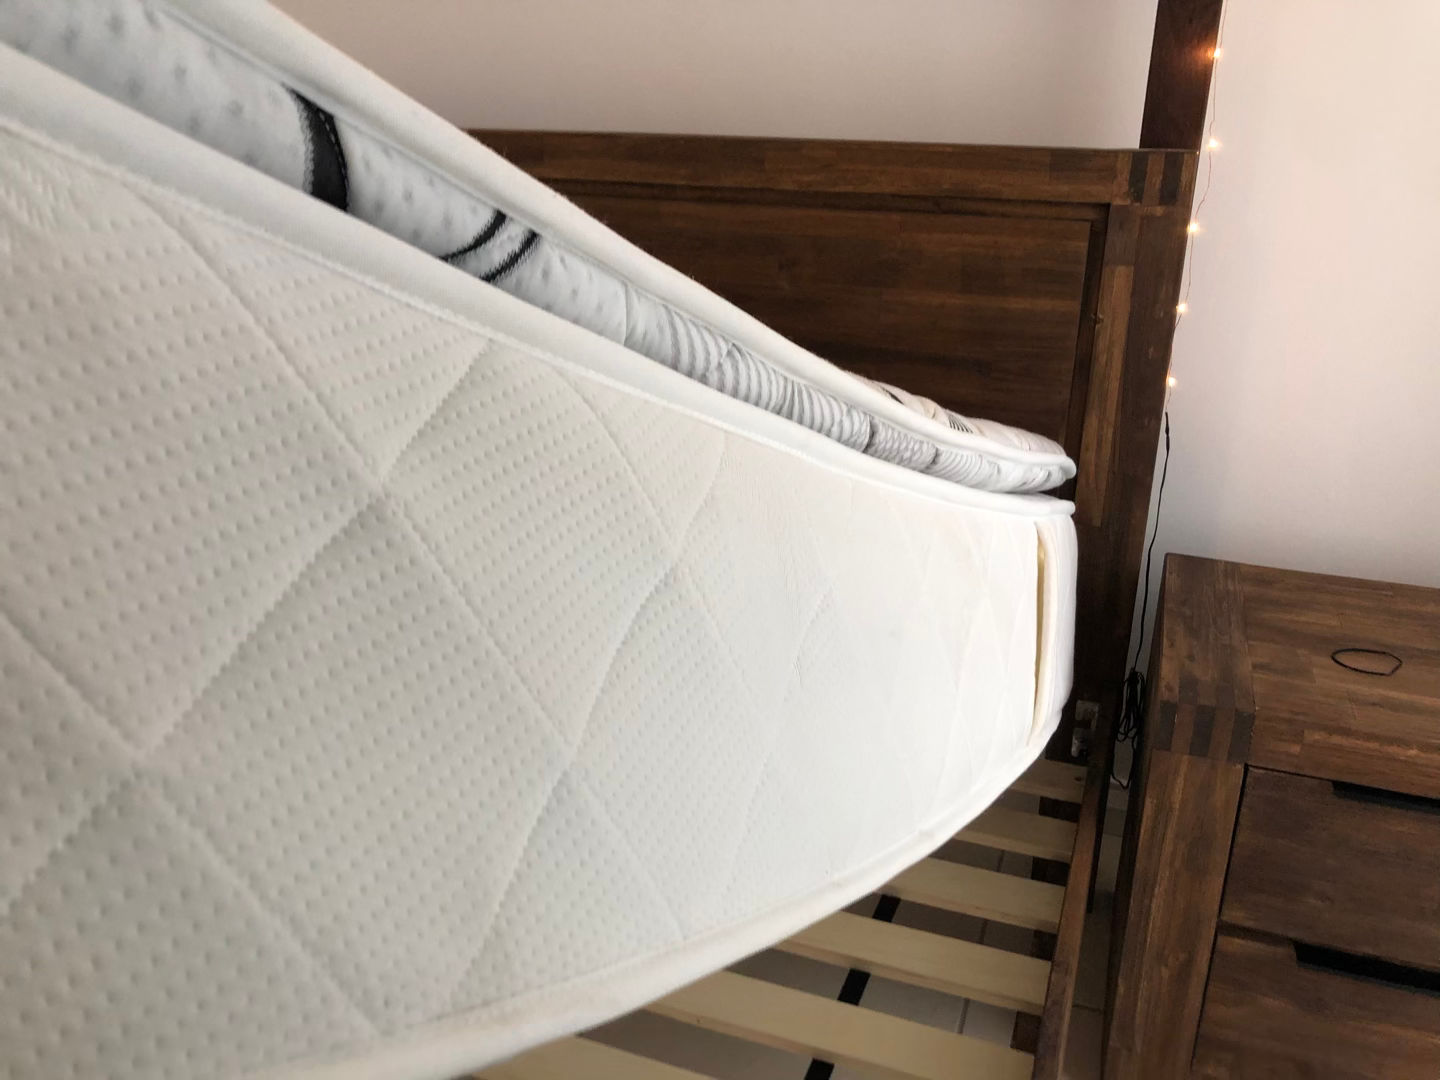 Cómo limpiar un colchón con bicarbonato - 7 pasos